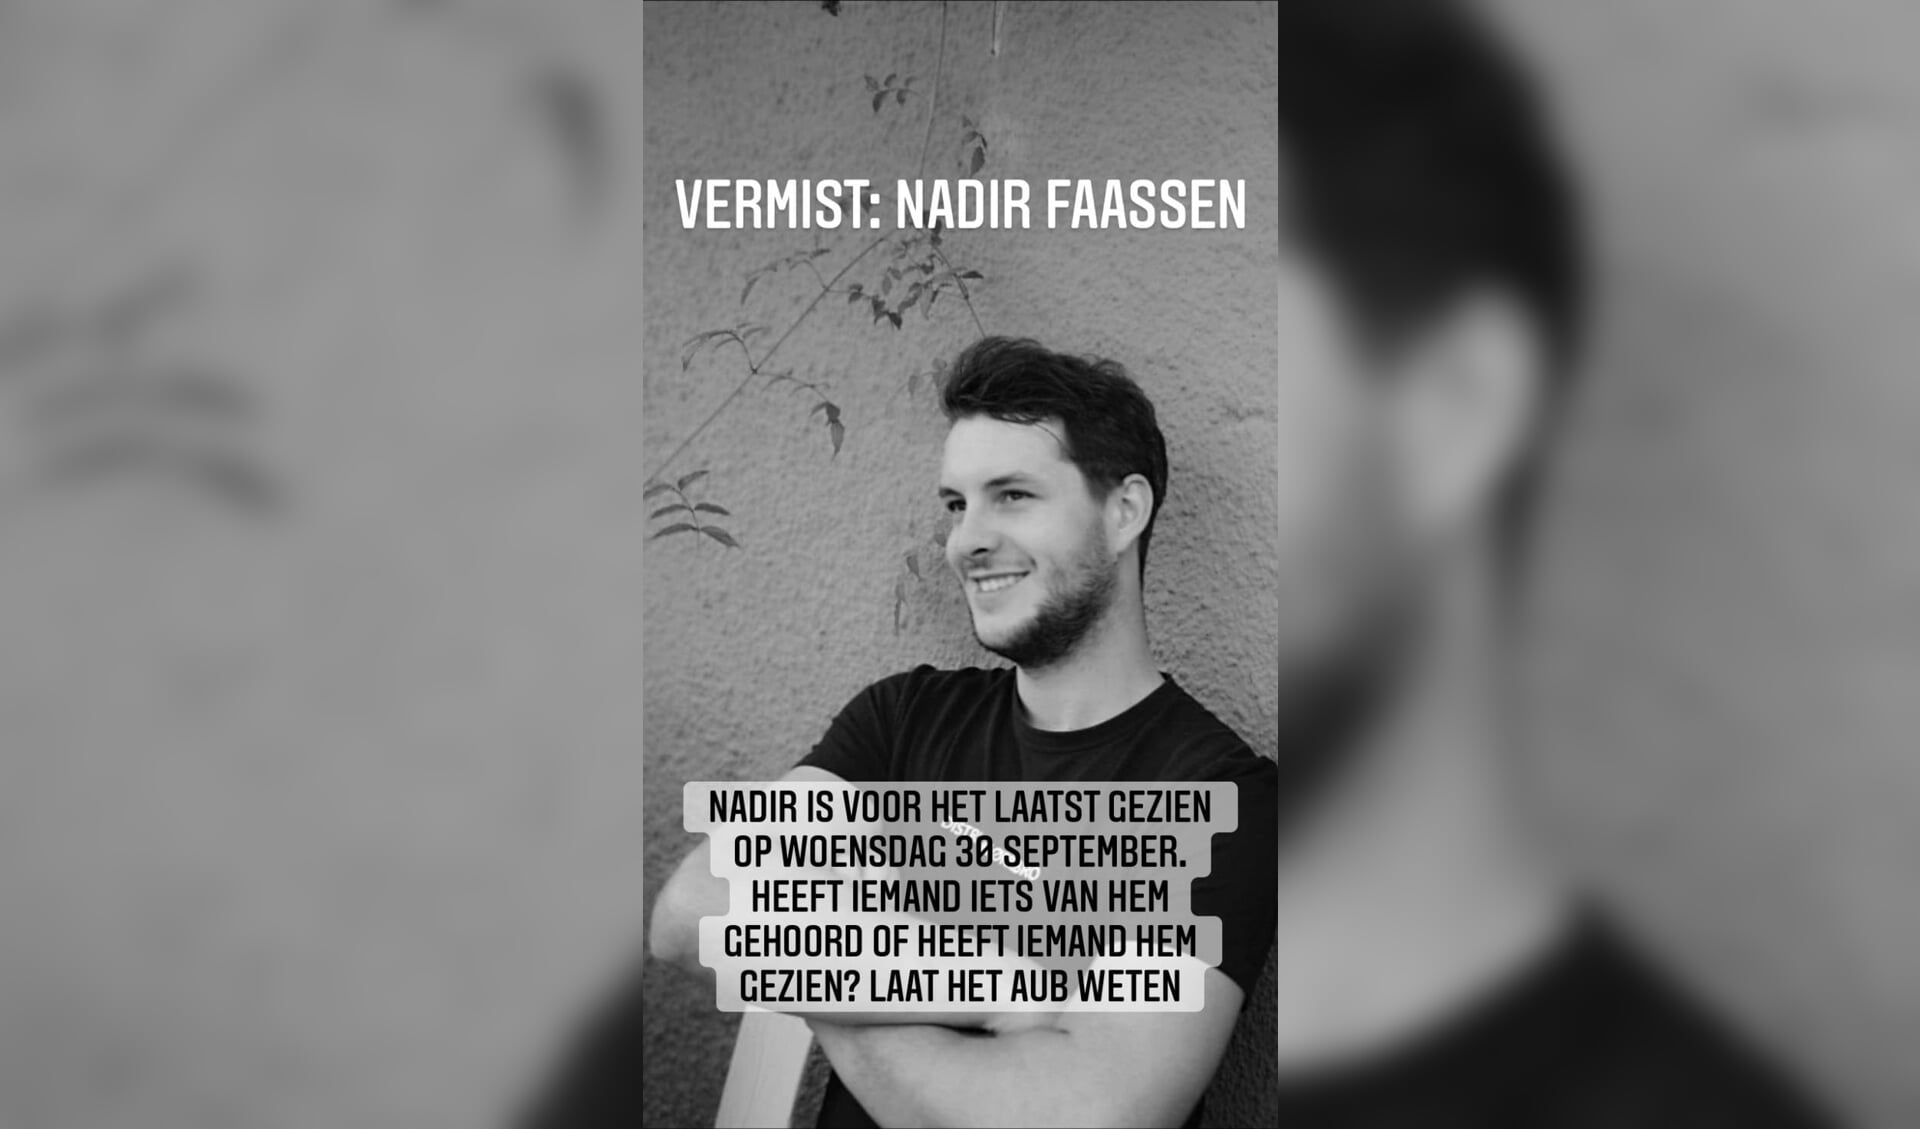 De vermiste Nadir Faassen.